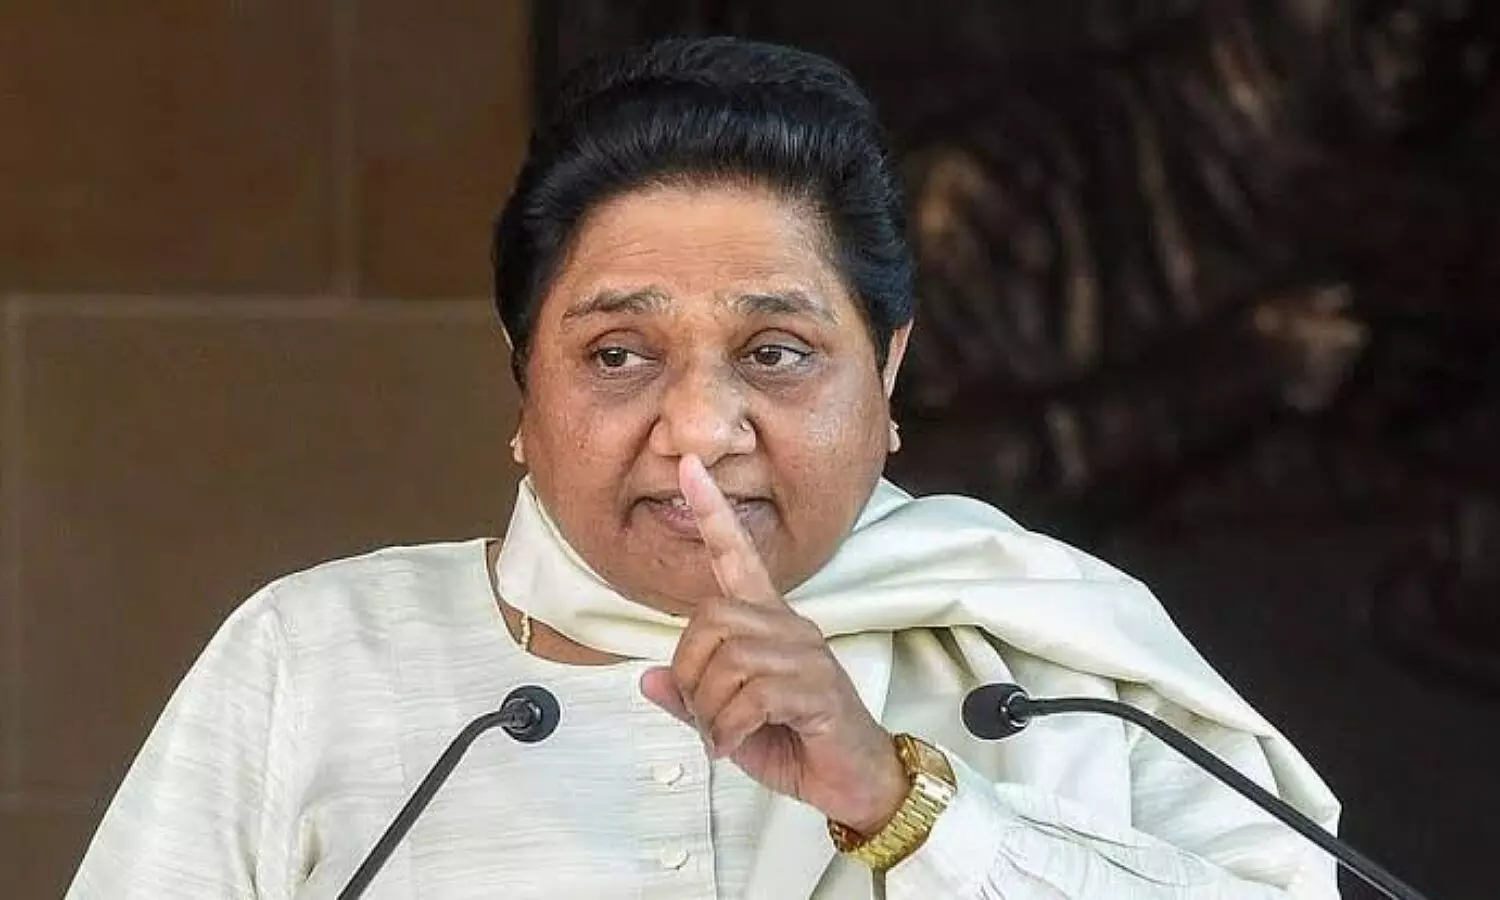 mayawati reaction on akhilesh yadav speech in up vidhan sabha on foreign trip satish mahana